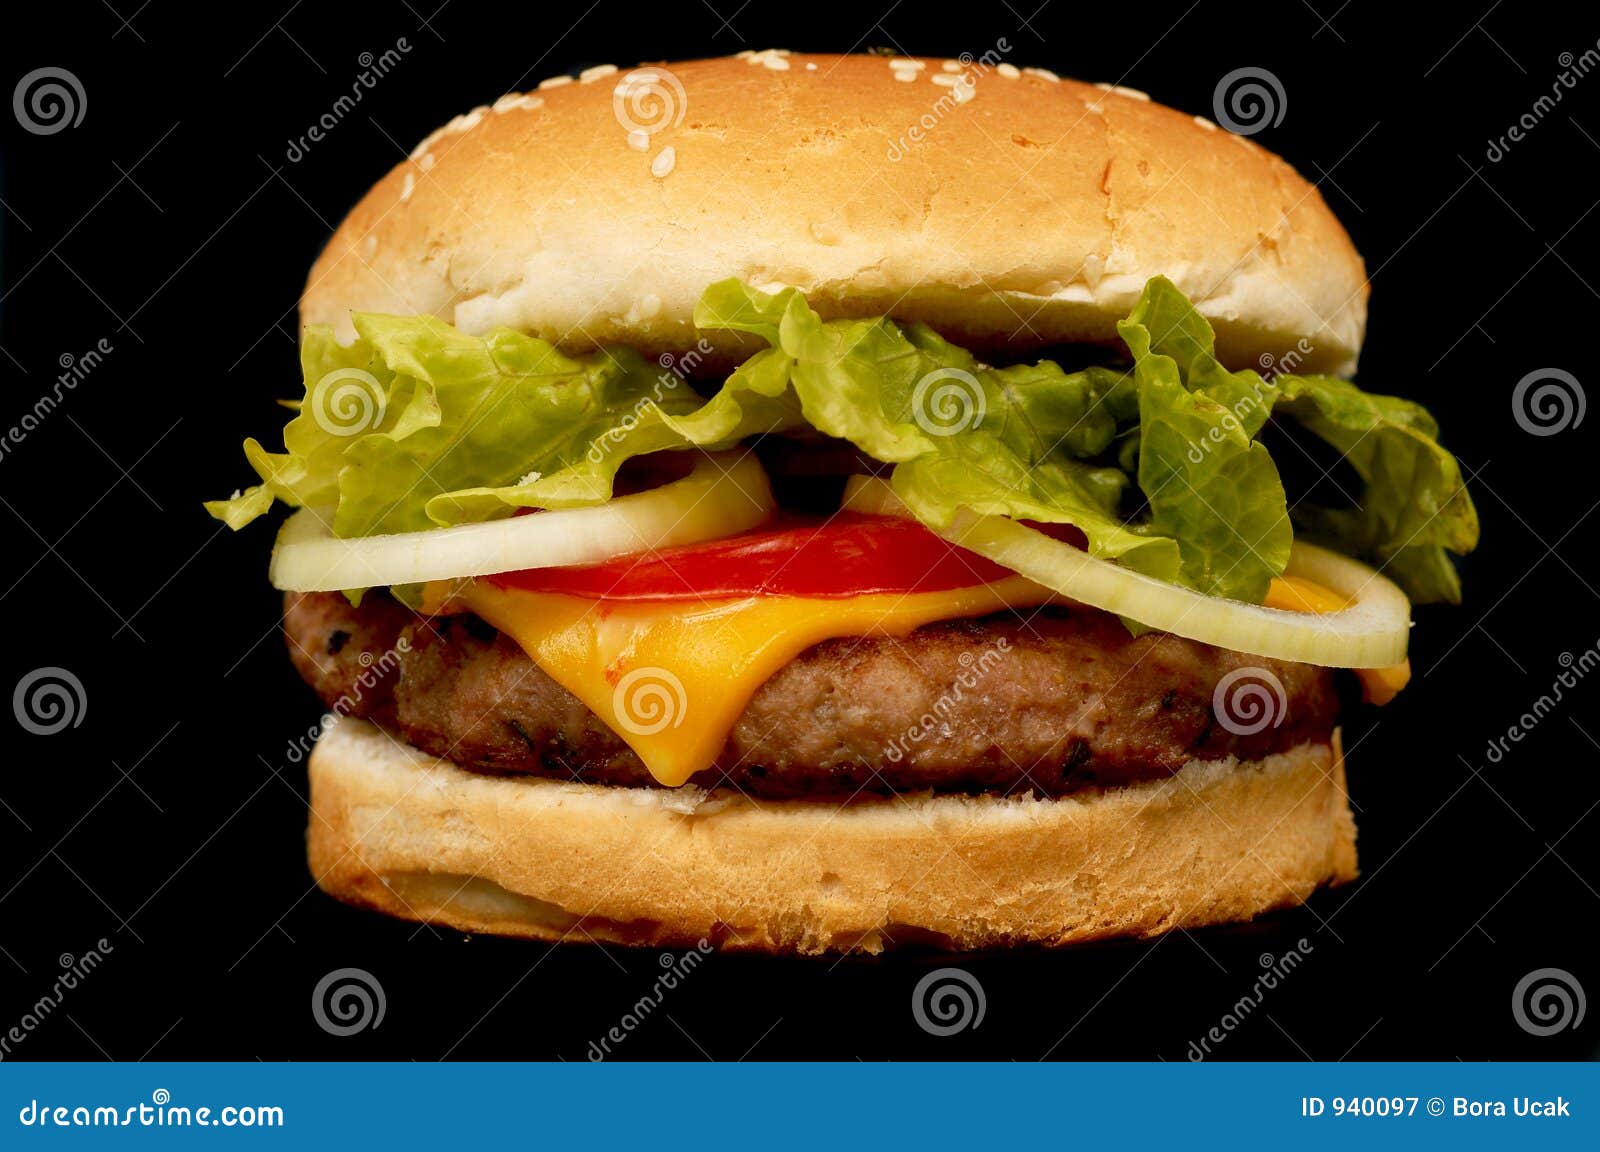 burger on black